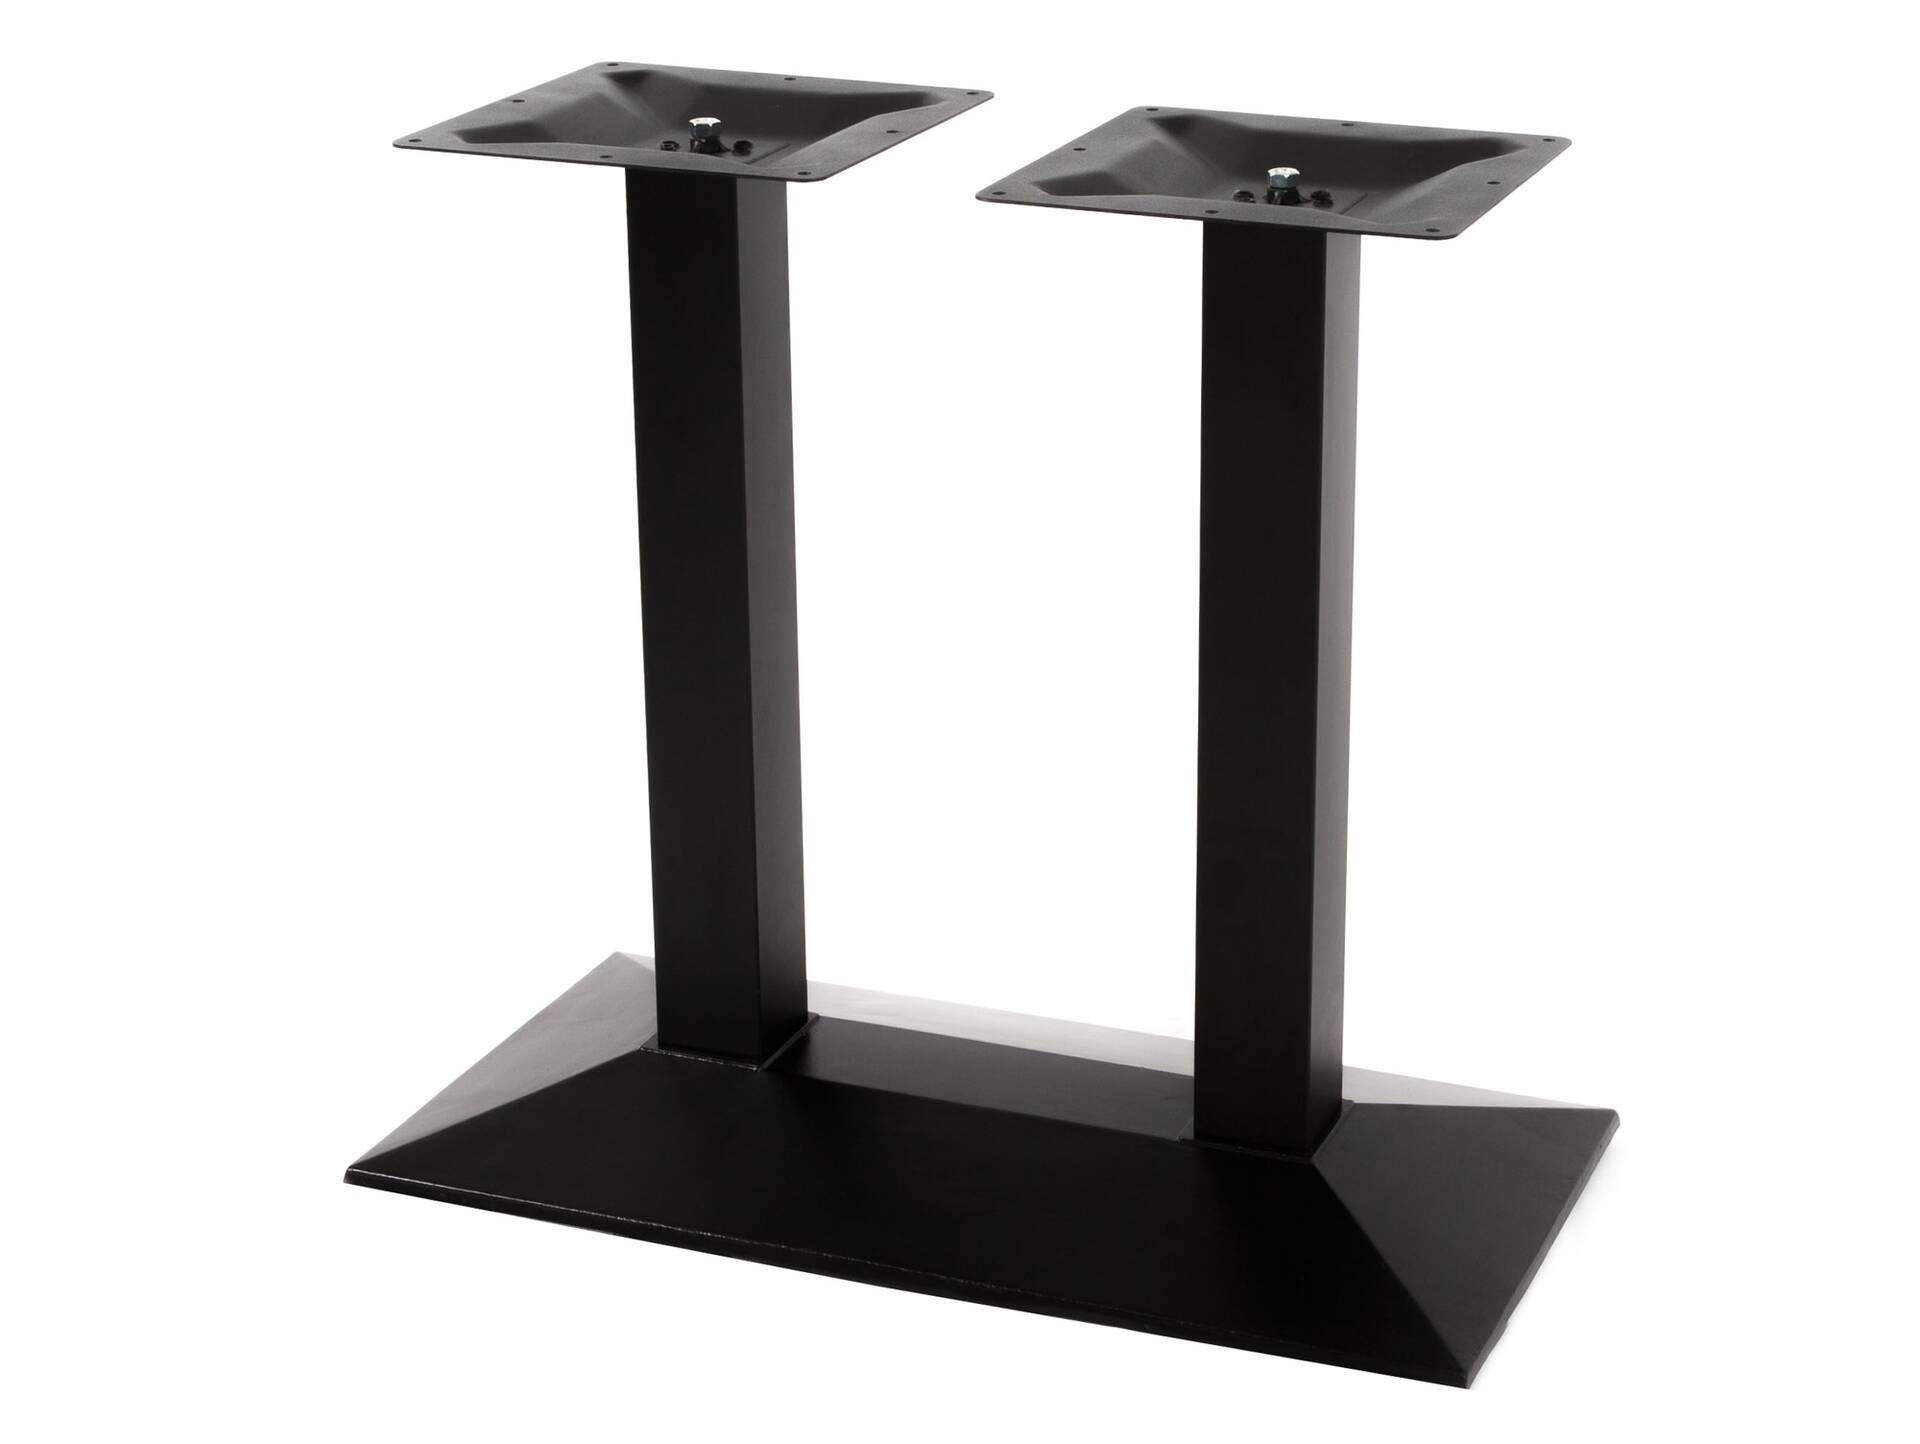 Doppel-Tischgestell, Material Gusseisen, pulverbeschichtet schwarz 